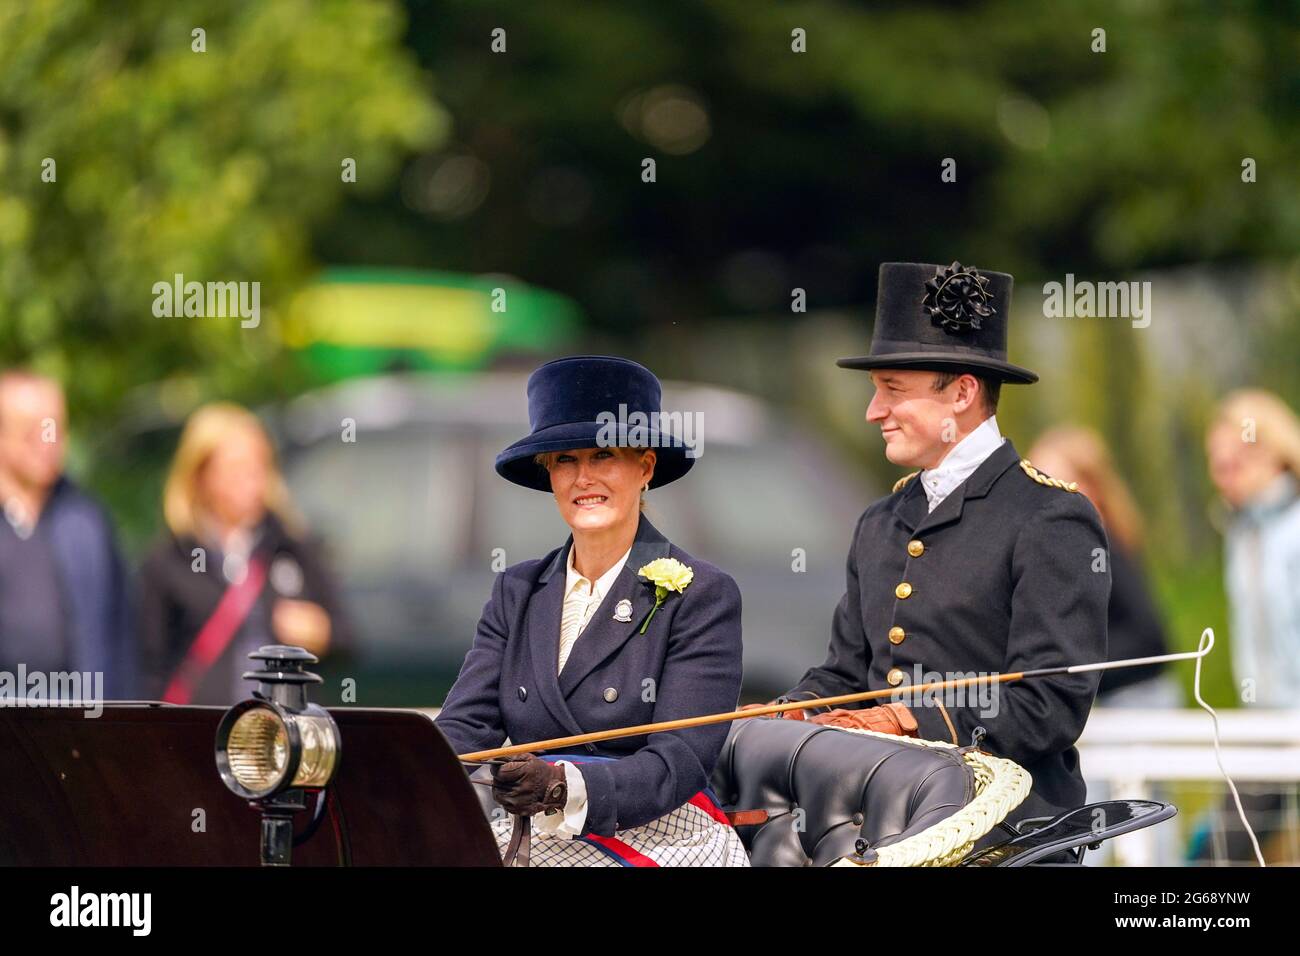 La comtesse de Wessex (à gauche) participe à la rencontre de Champagne Laurent-Perrier de la British Driving Society au Royal Windsor Horse Show, à Windsor. Date de la photo: Dimanche 4 juillet 2021. Banque D'Images